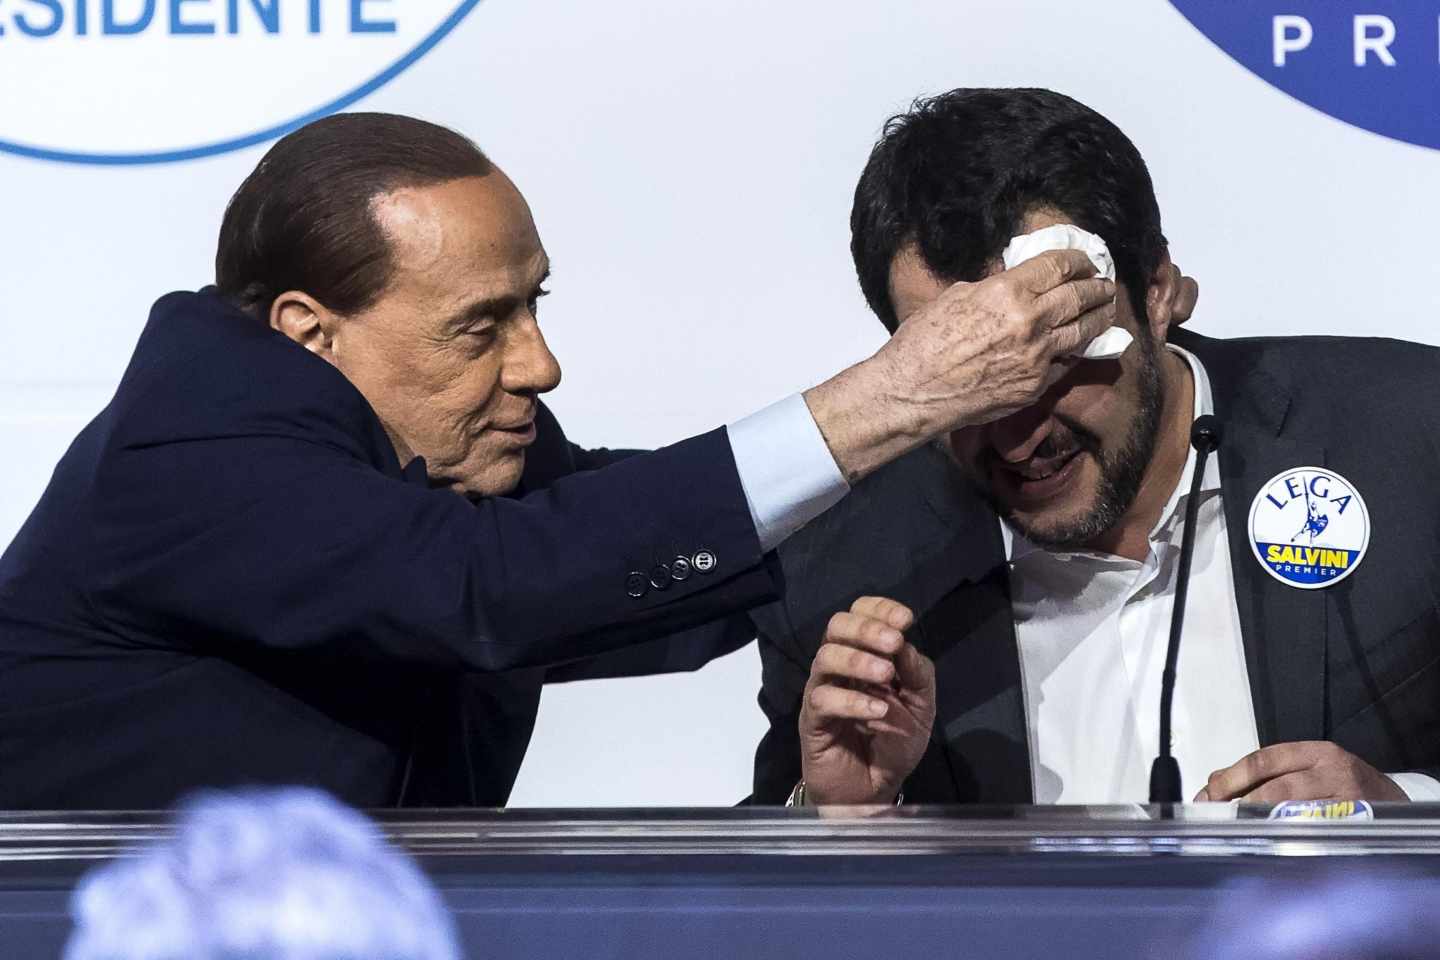 Silvio Berlusconi seca la frente a Matteo Salvini